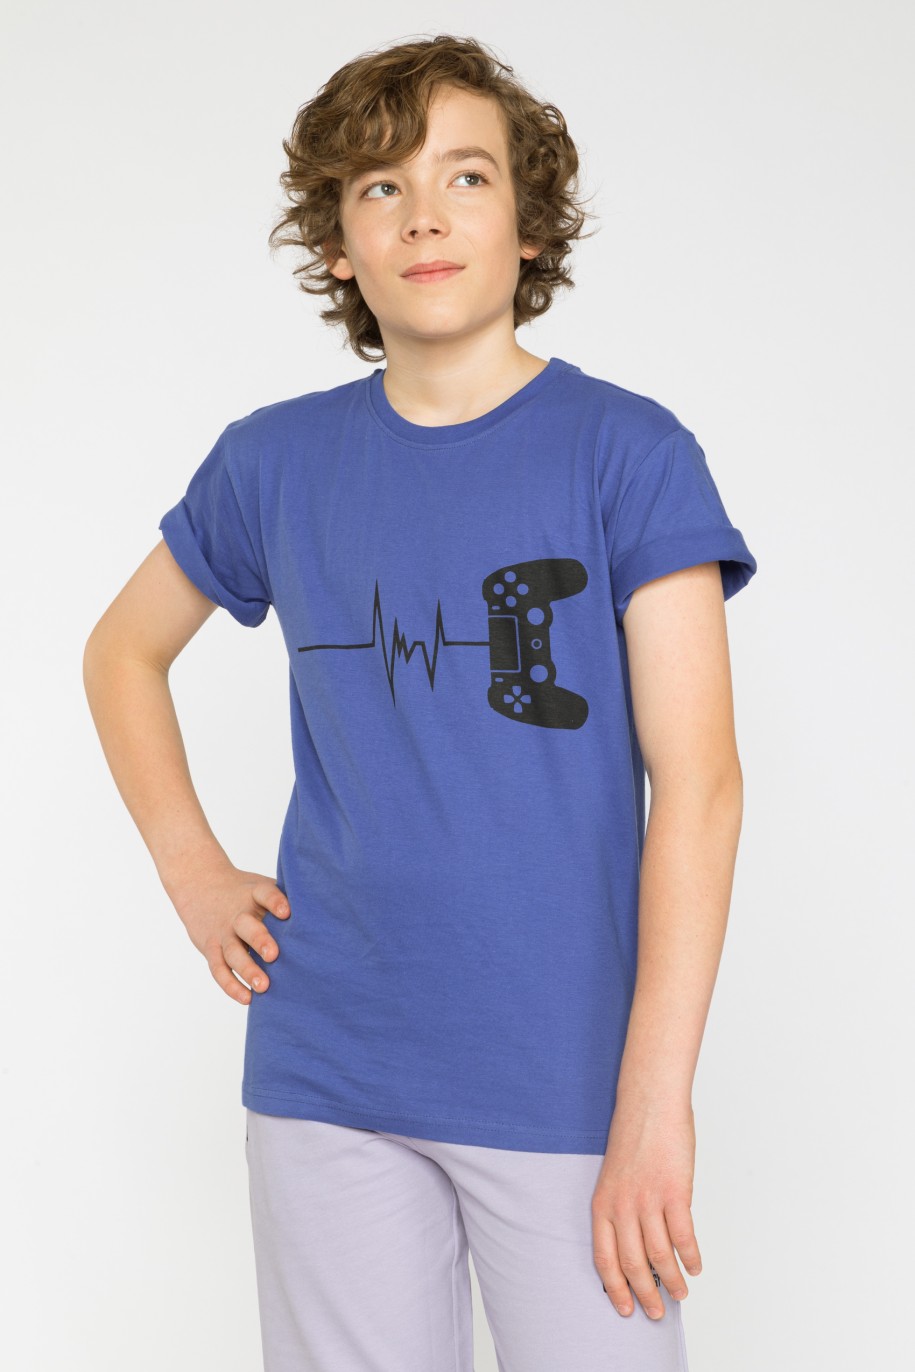 Niebieski t-shirt z nadrukiem dla chłopaka - 33909